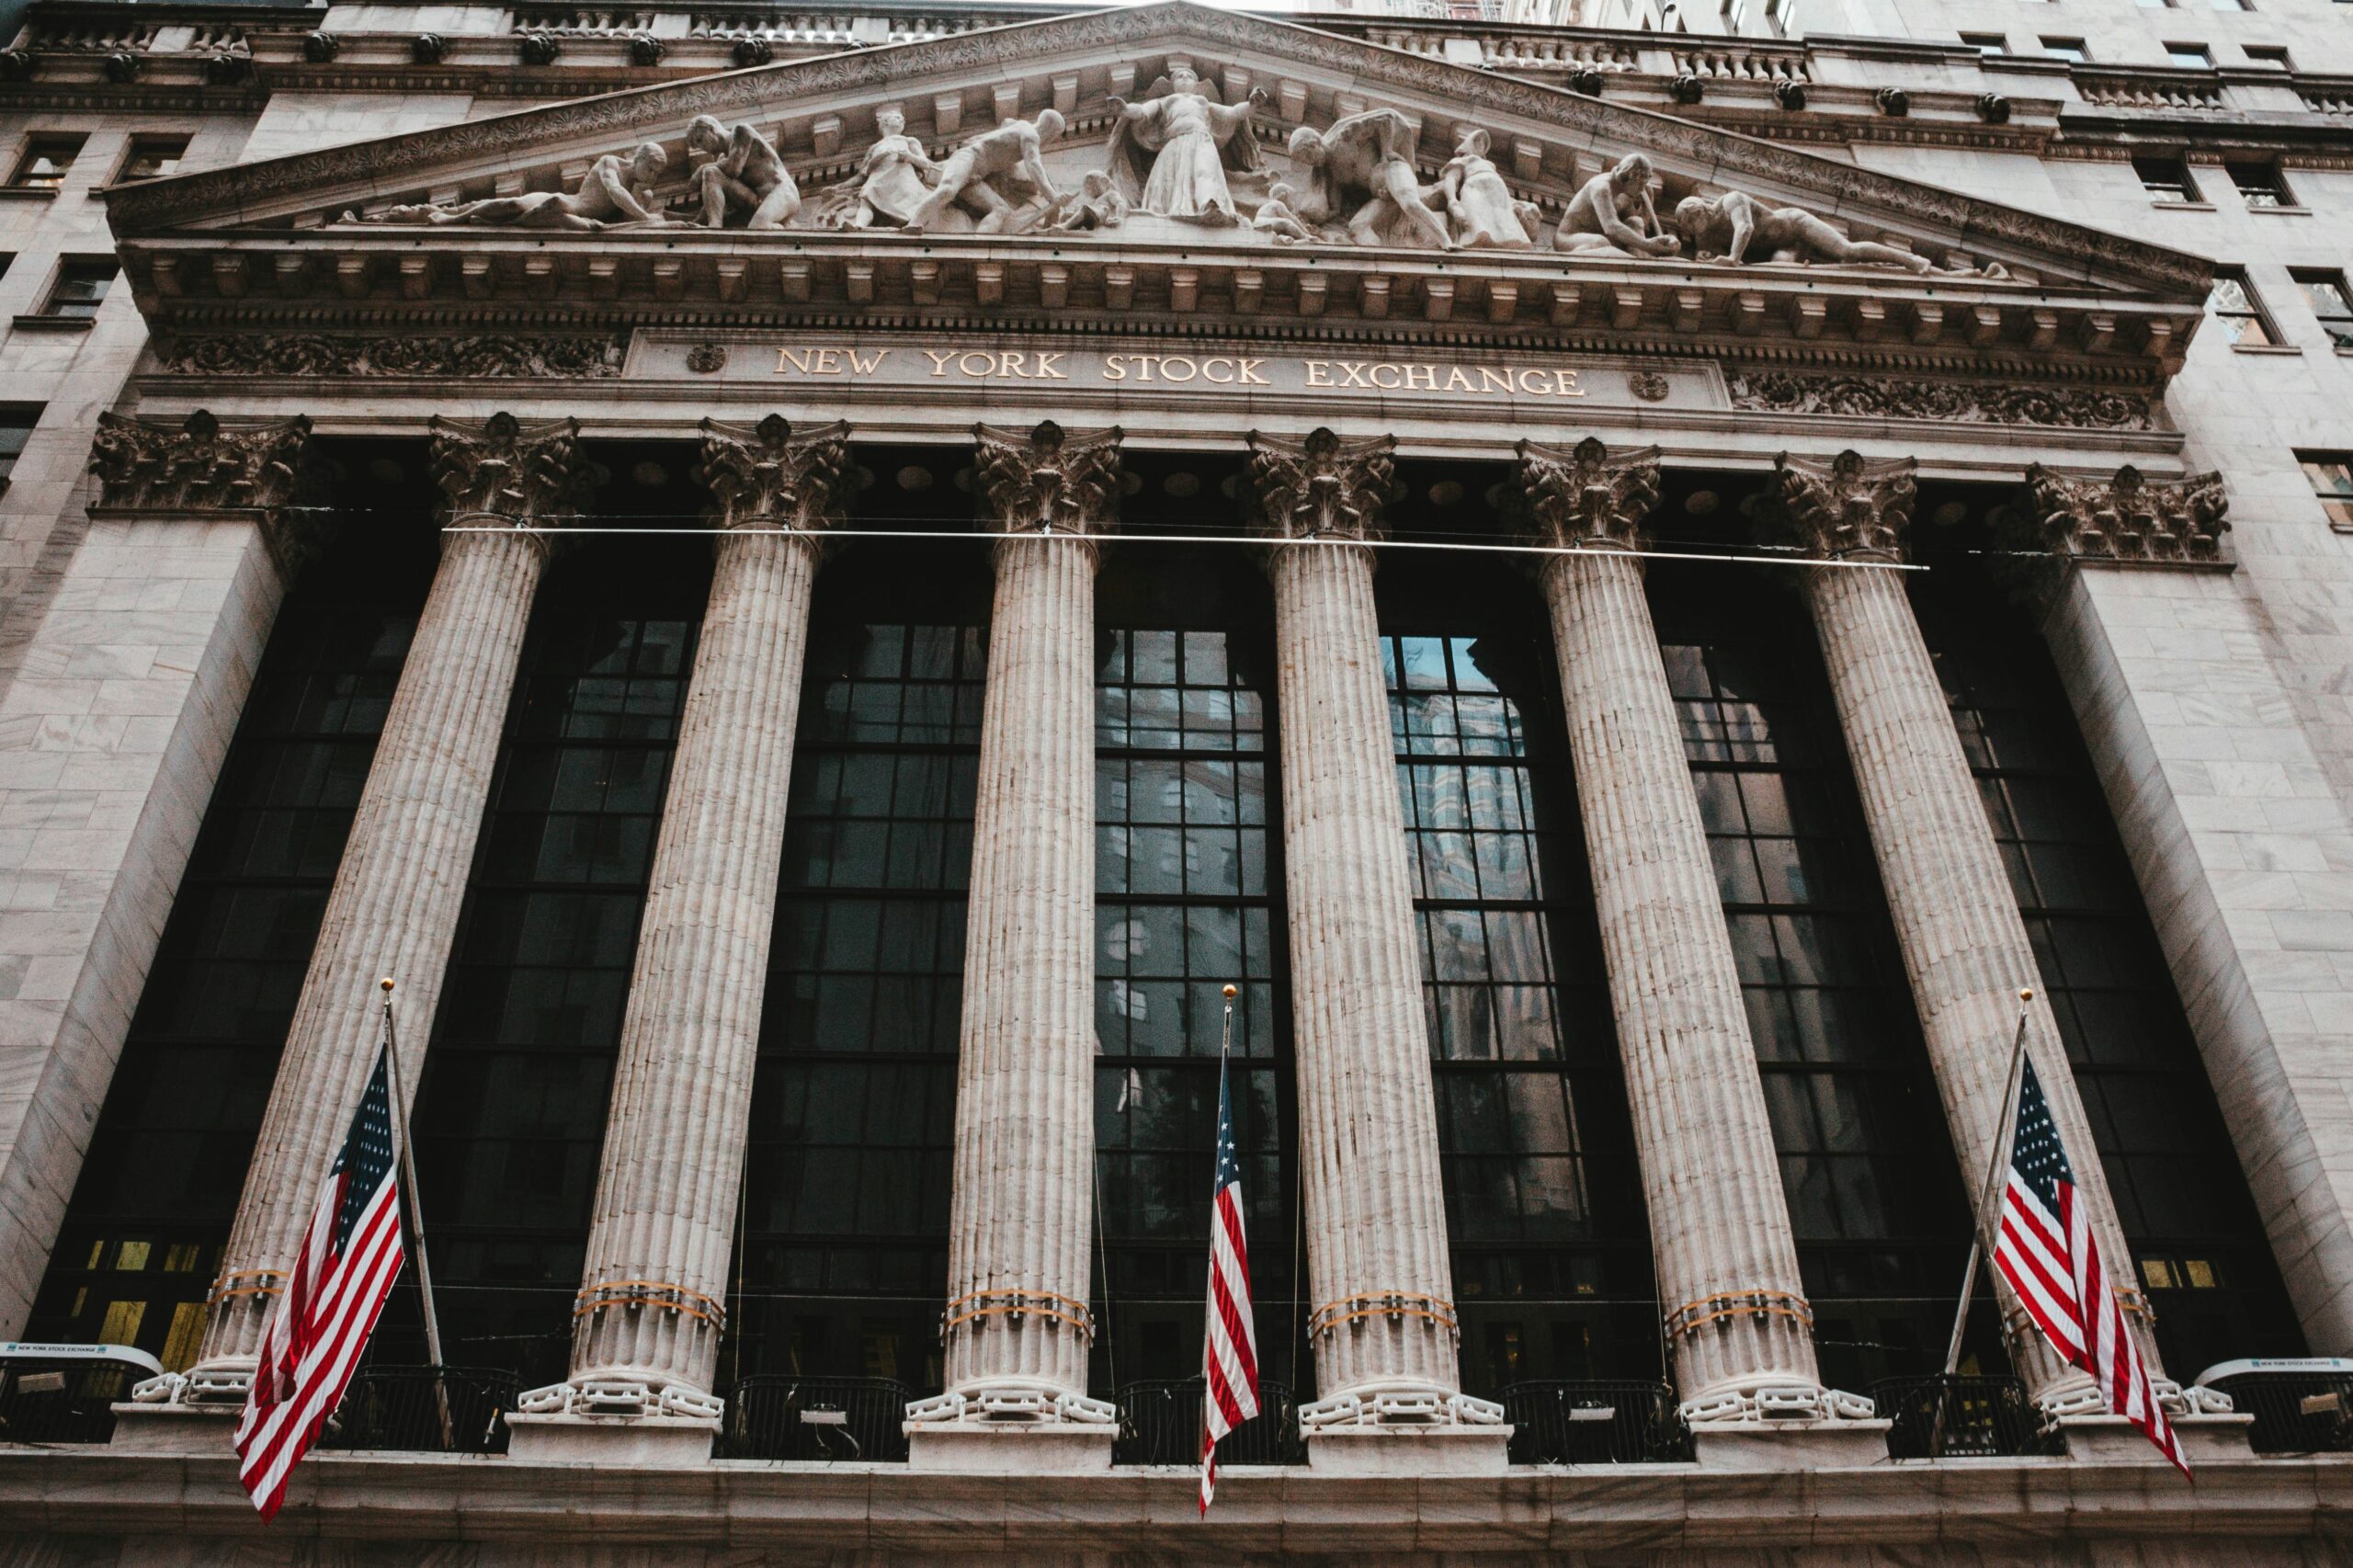 New York Stock Exchange (©Aditya Vyas)